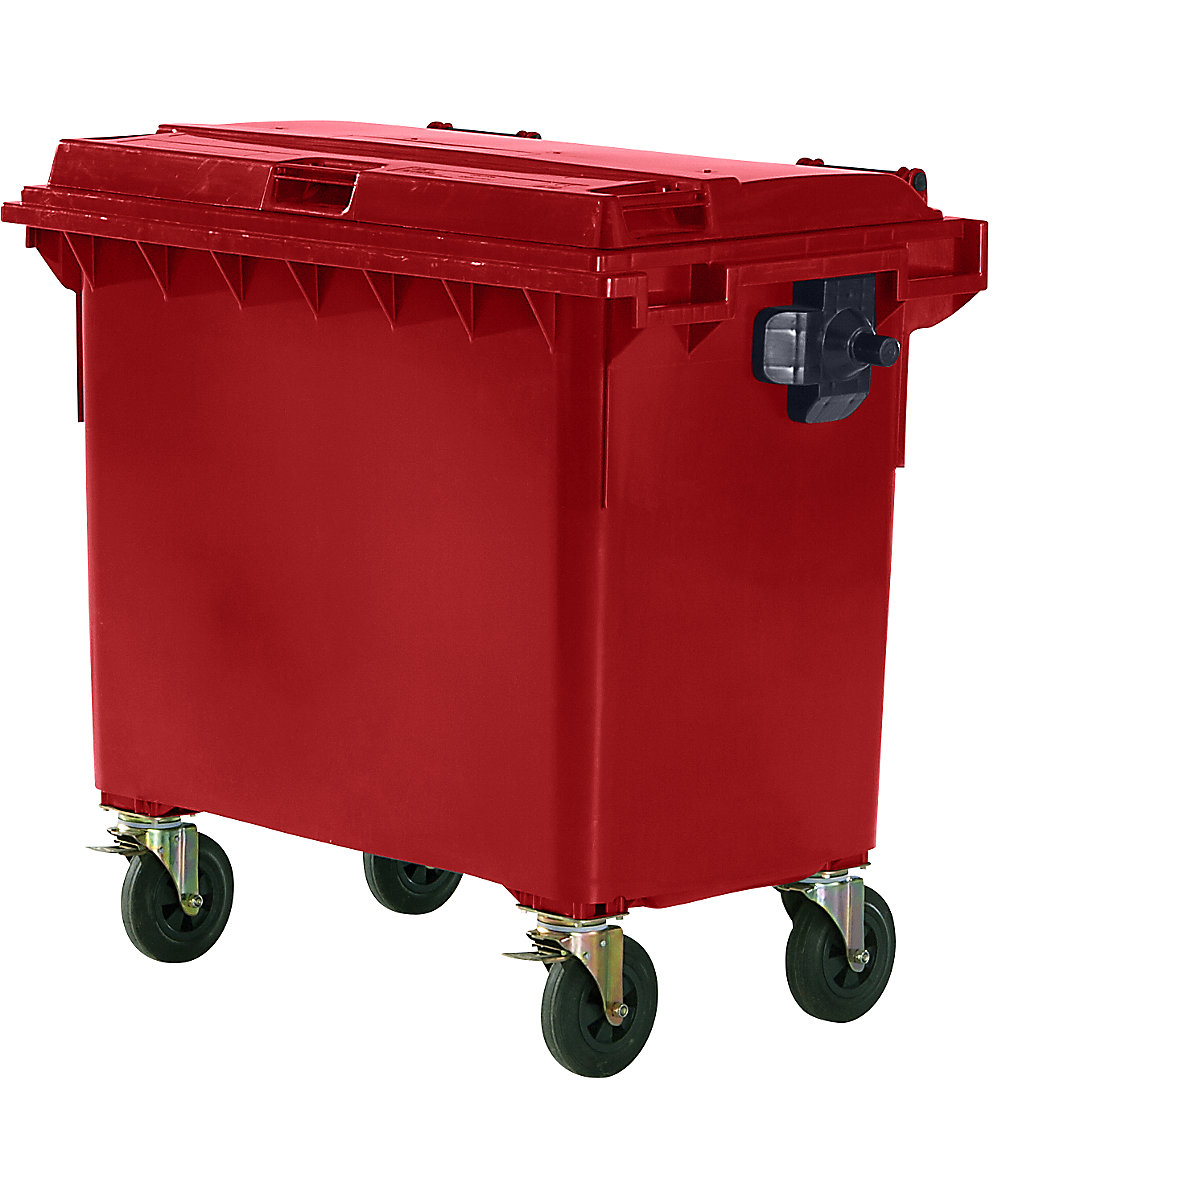 Conteneur à ordures en plastique conforme DIN EN 840, capacité 660 l, l x h x p 1360 x 1235 x 765 mm, rouge, 5 pièces et +